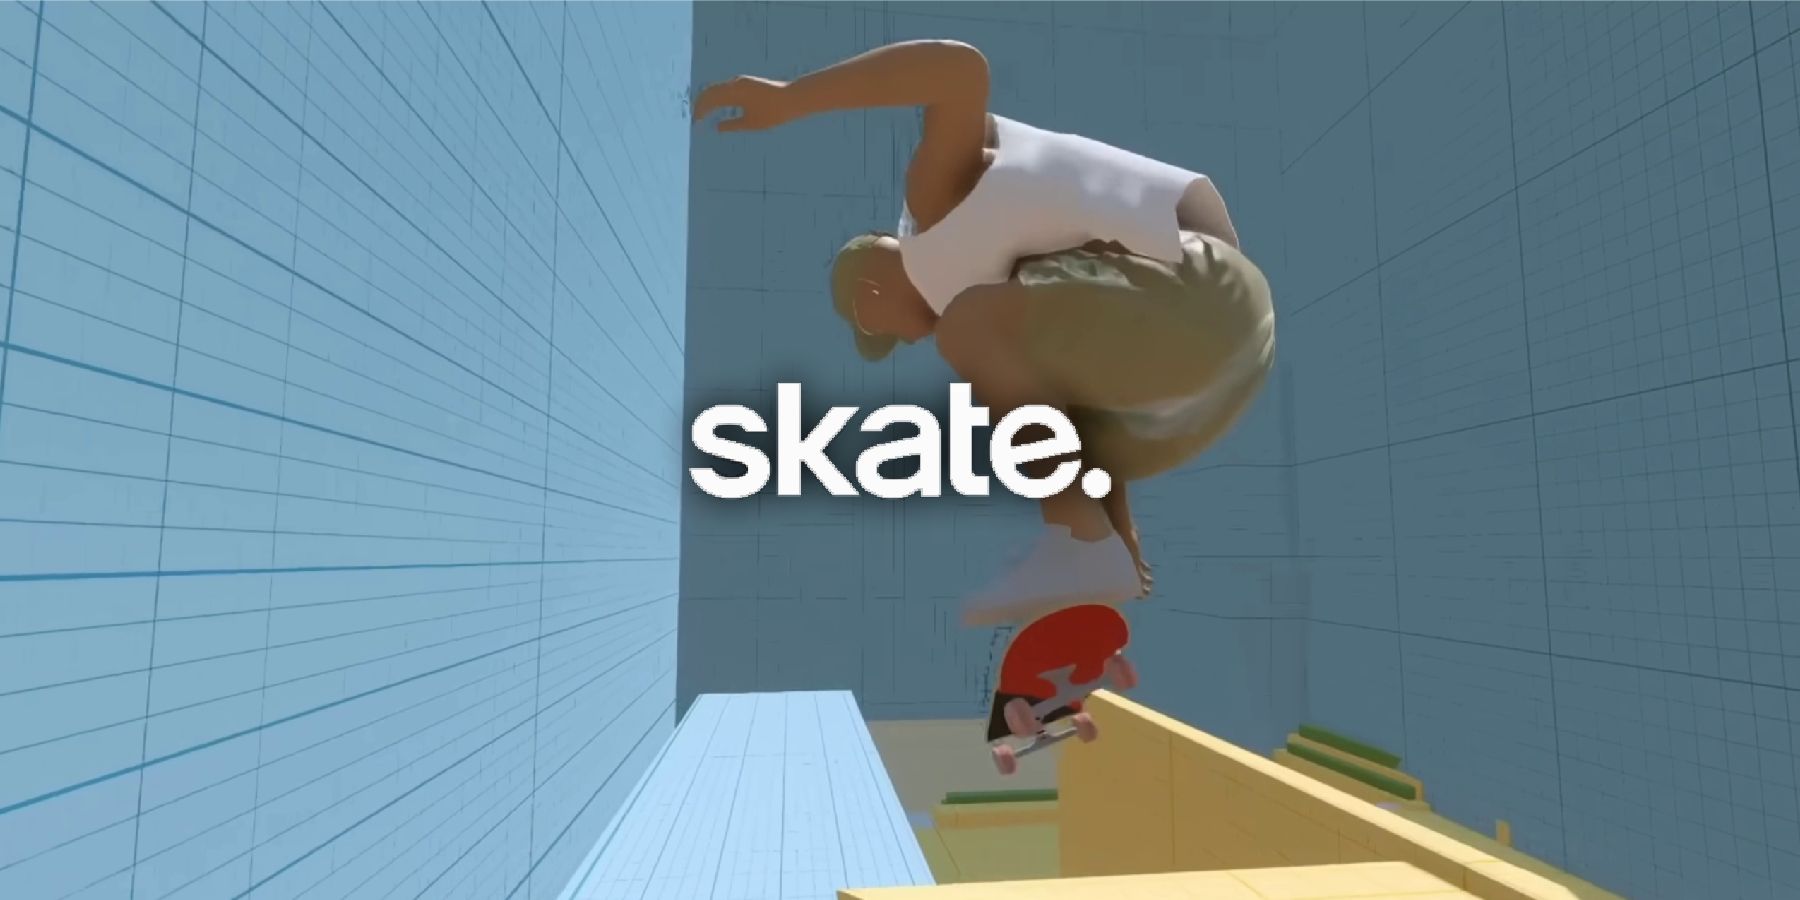 Skate's Marketing Is a Breath of Fresh Air